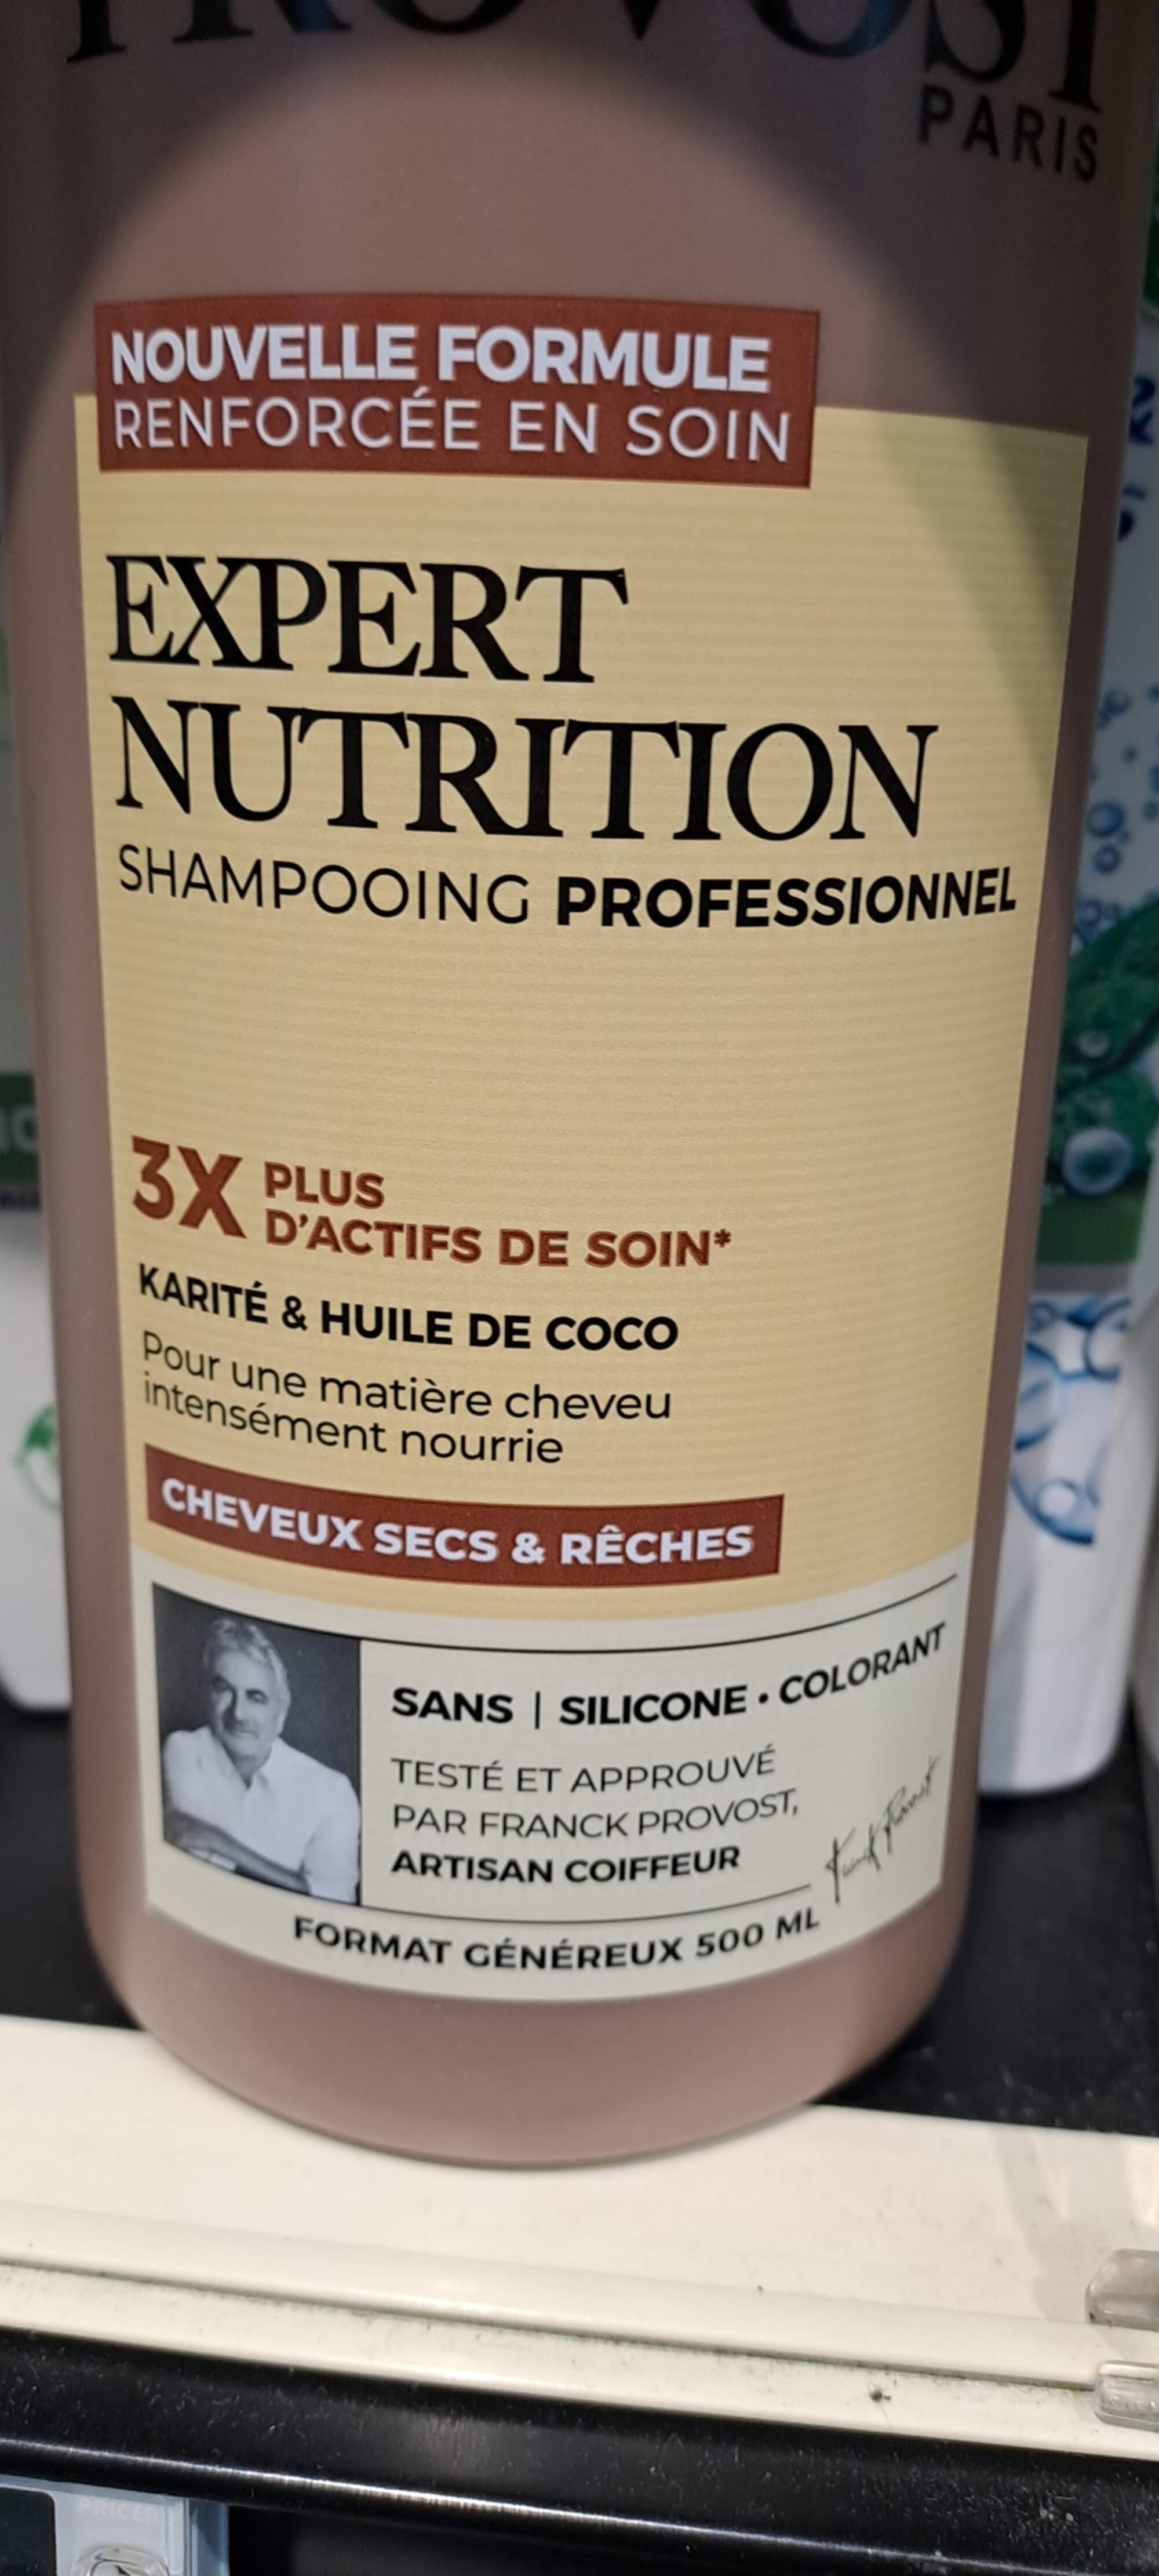 FRANCK PROVOST PARIS - Expert nutrition shampooing professionnel- cheveux secs et rêches